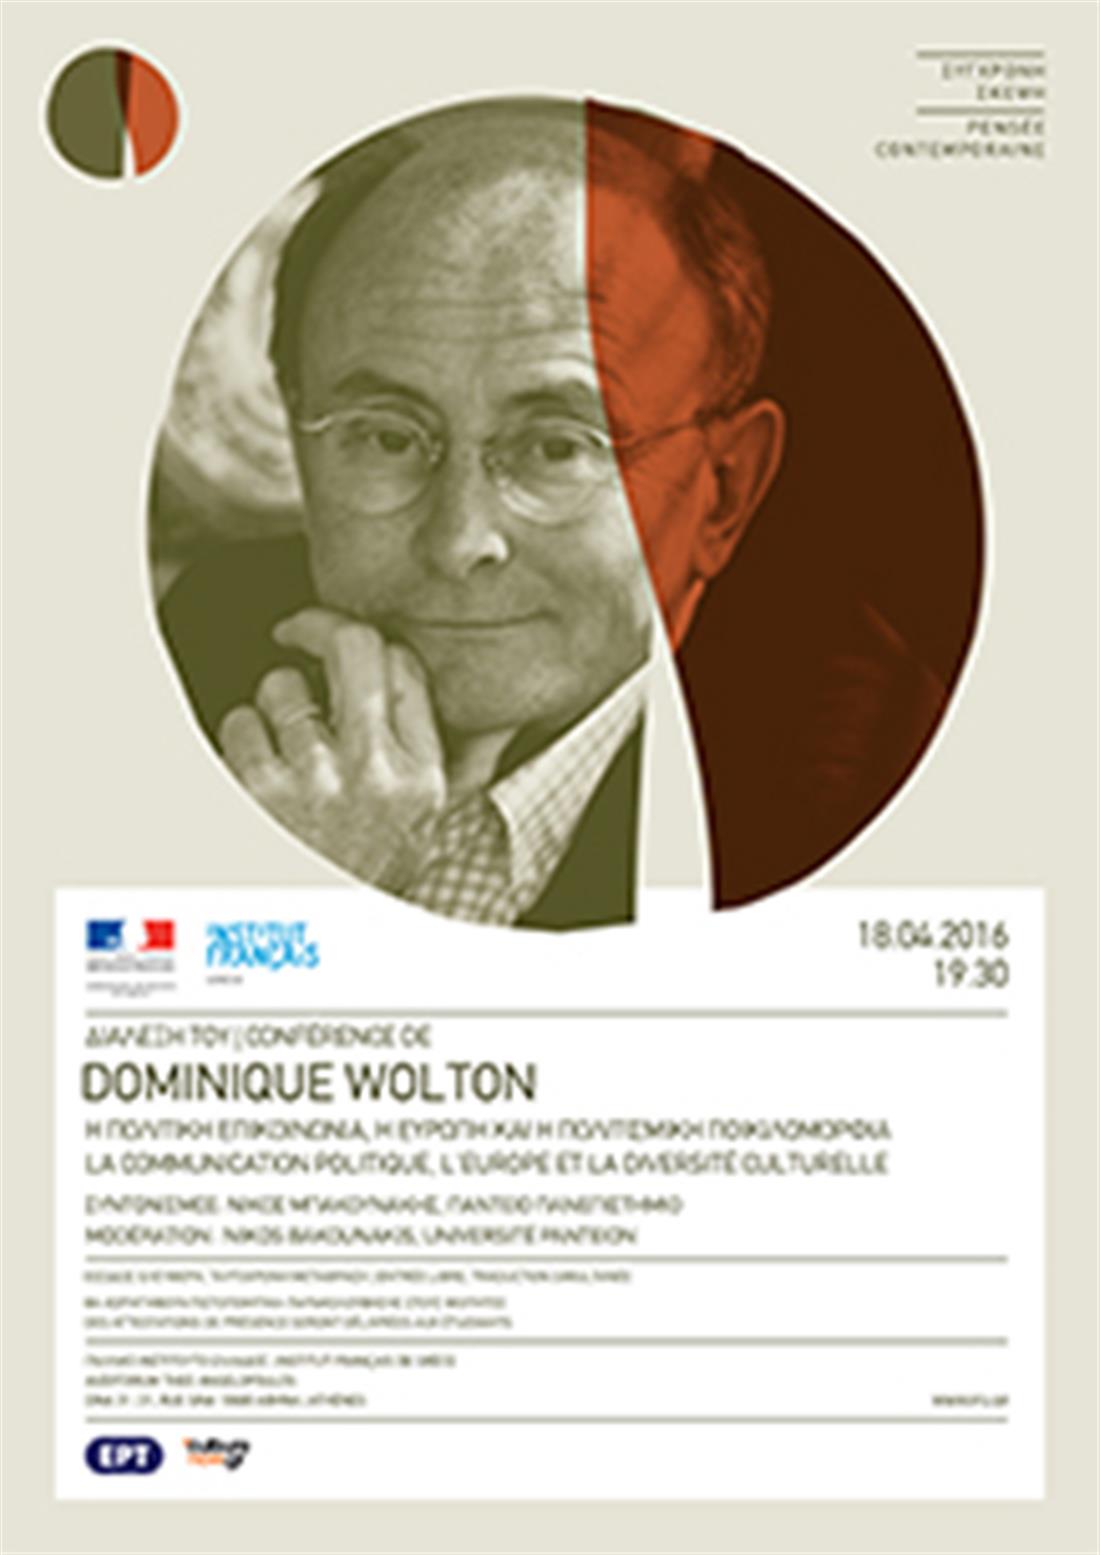 Διάλεξη - Dominique Wolton - Γαλλικό Ινστιτούτο Ελλάδος